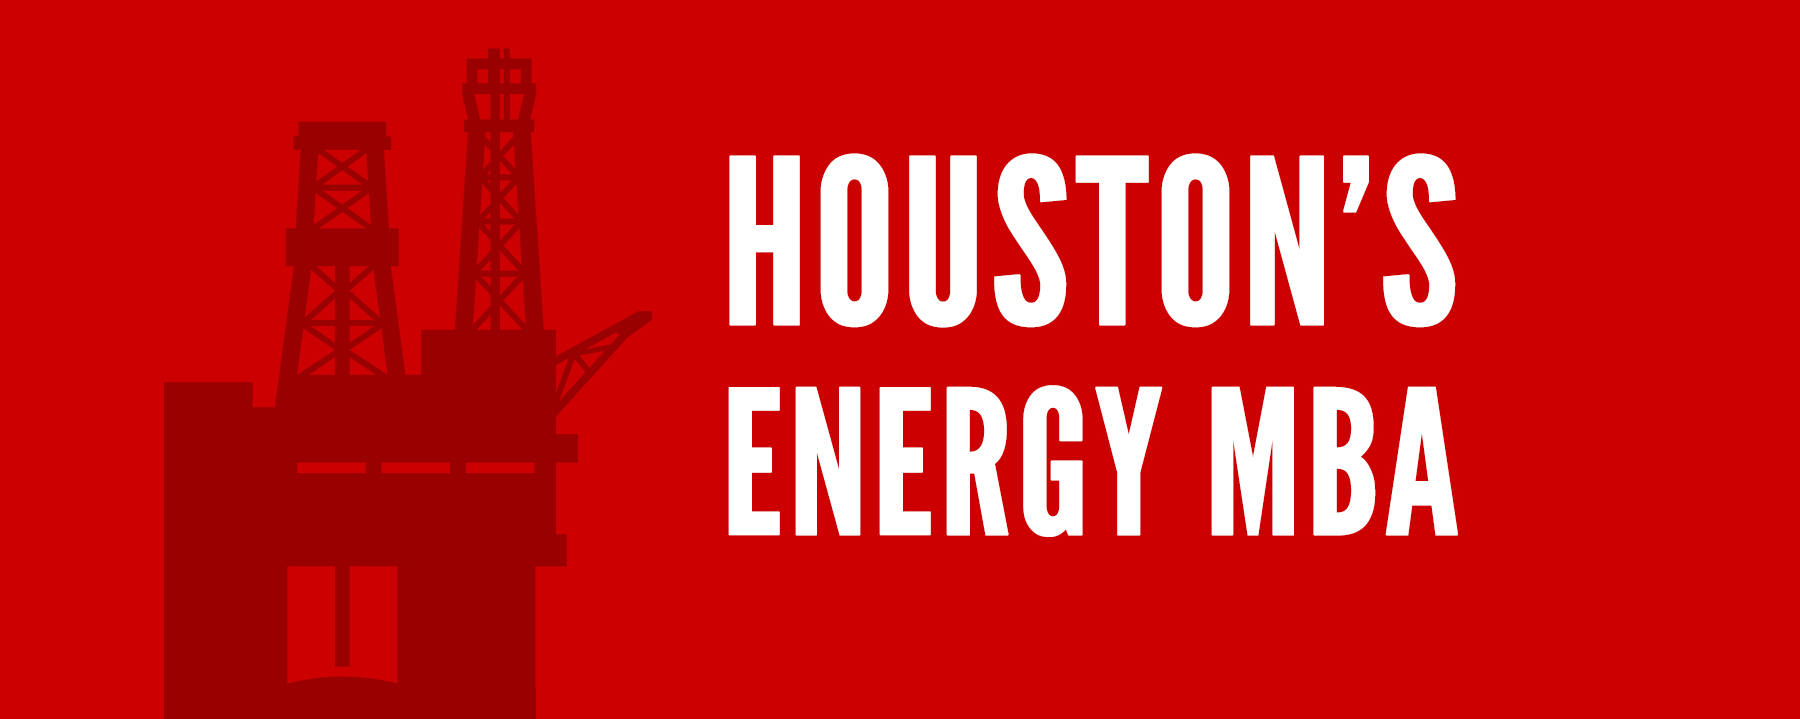 Houston's Energy MBA